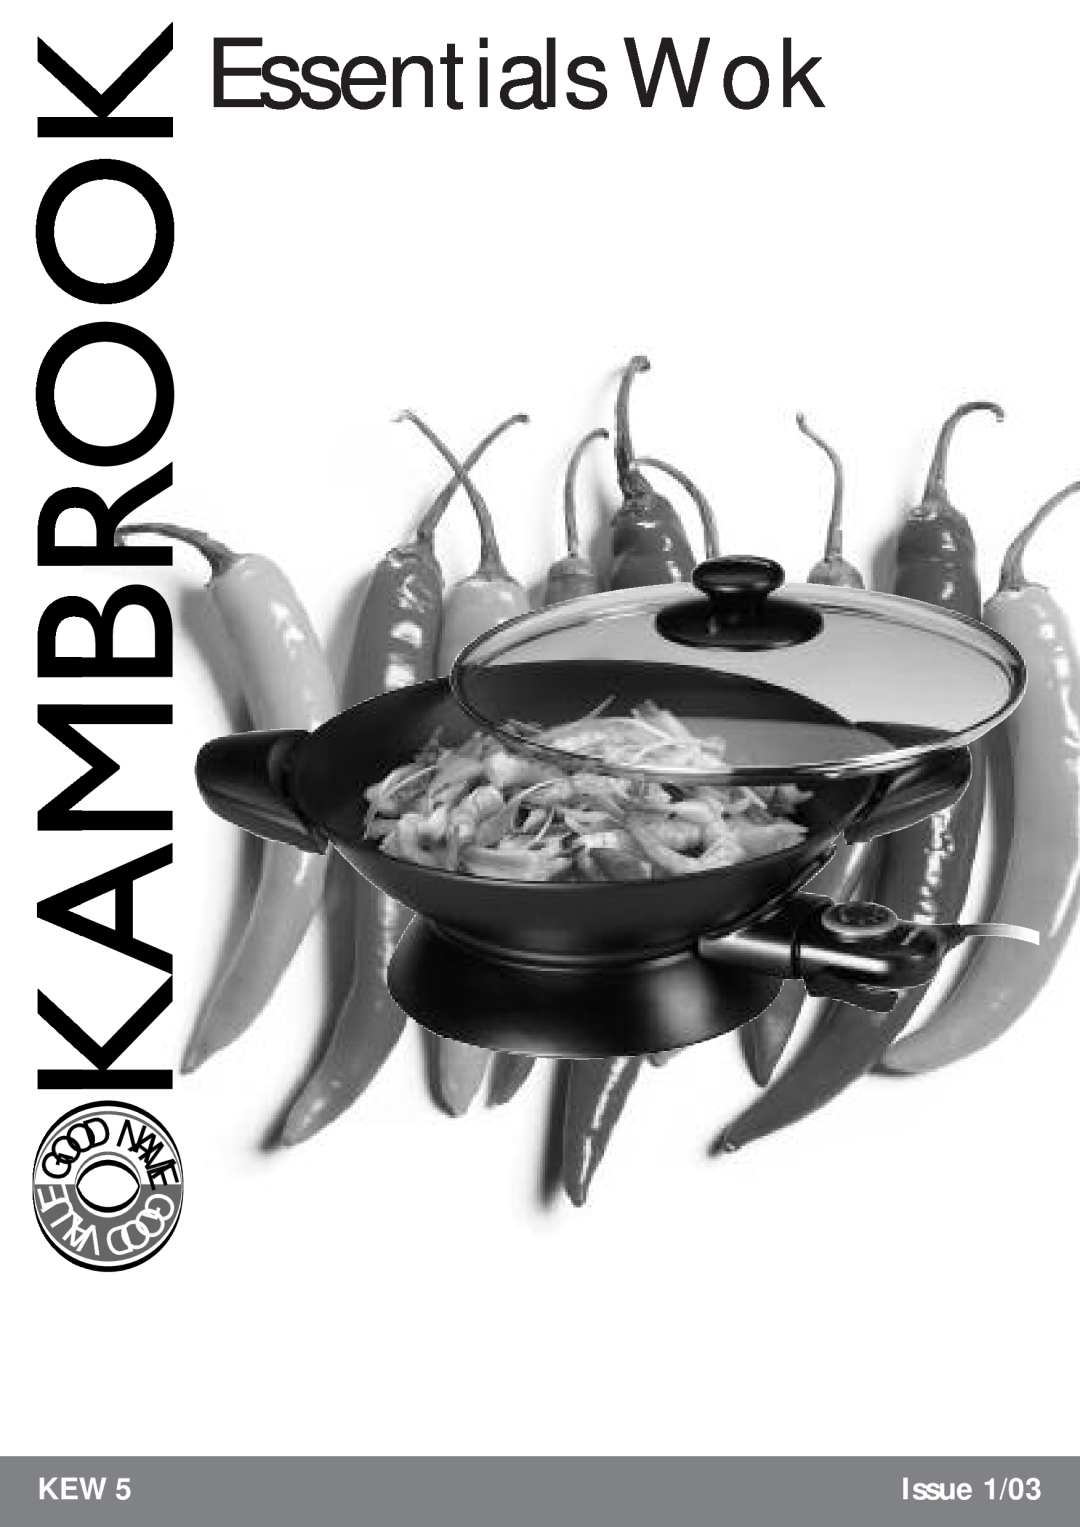 Kambrook KEW5 manual U Lav, Essentials Wok, Issue 1/03 